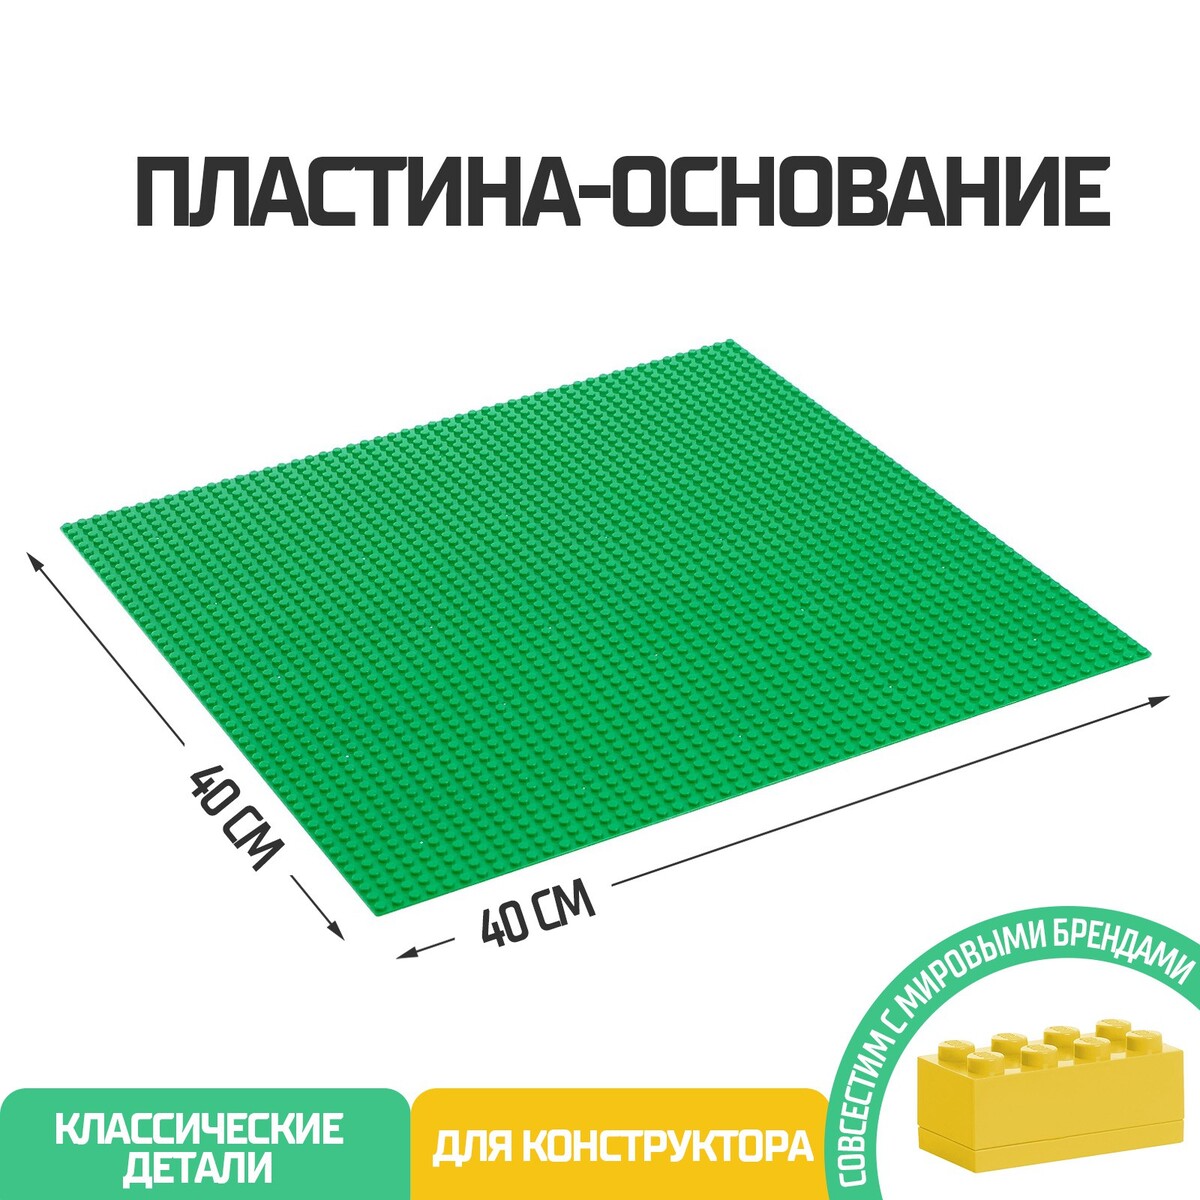 Пластина-основание для конструктора, 40 х 40 см, цвет зеленый пластина основание для конструктора 12 8 × 12 8 см салатовый